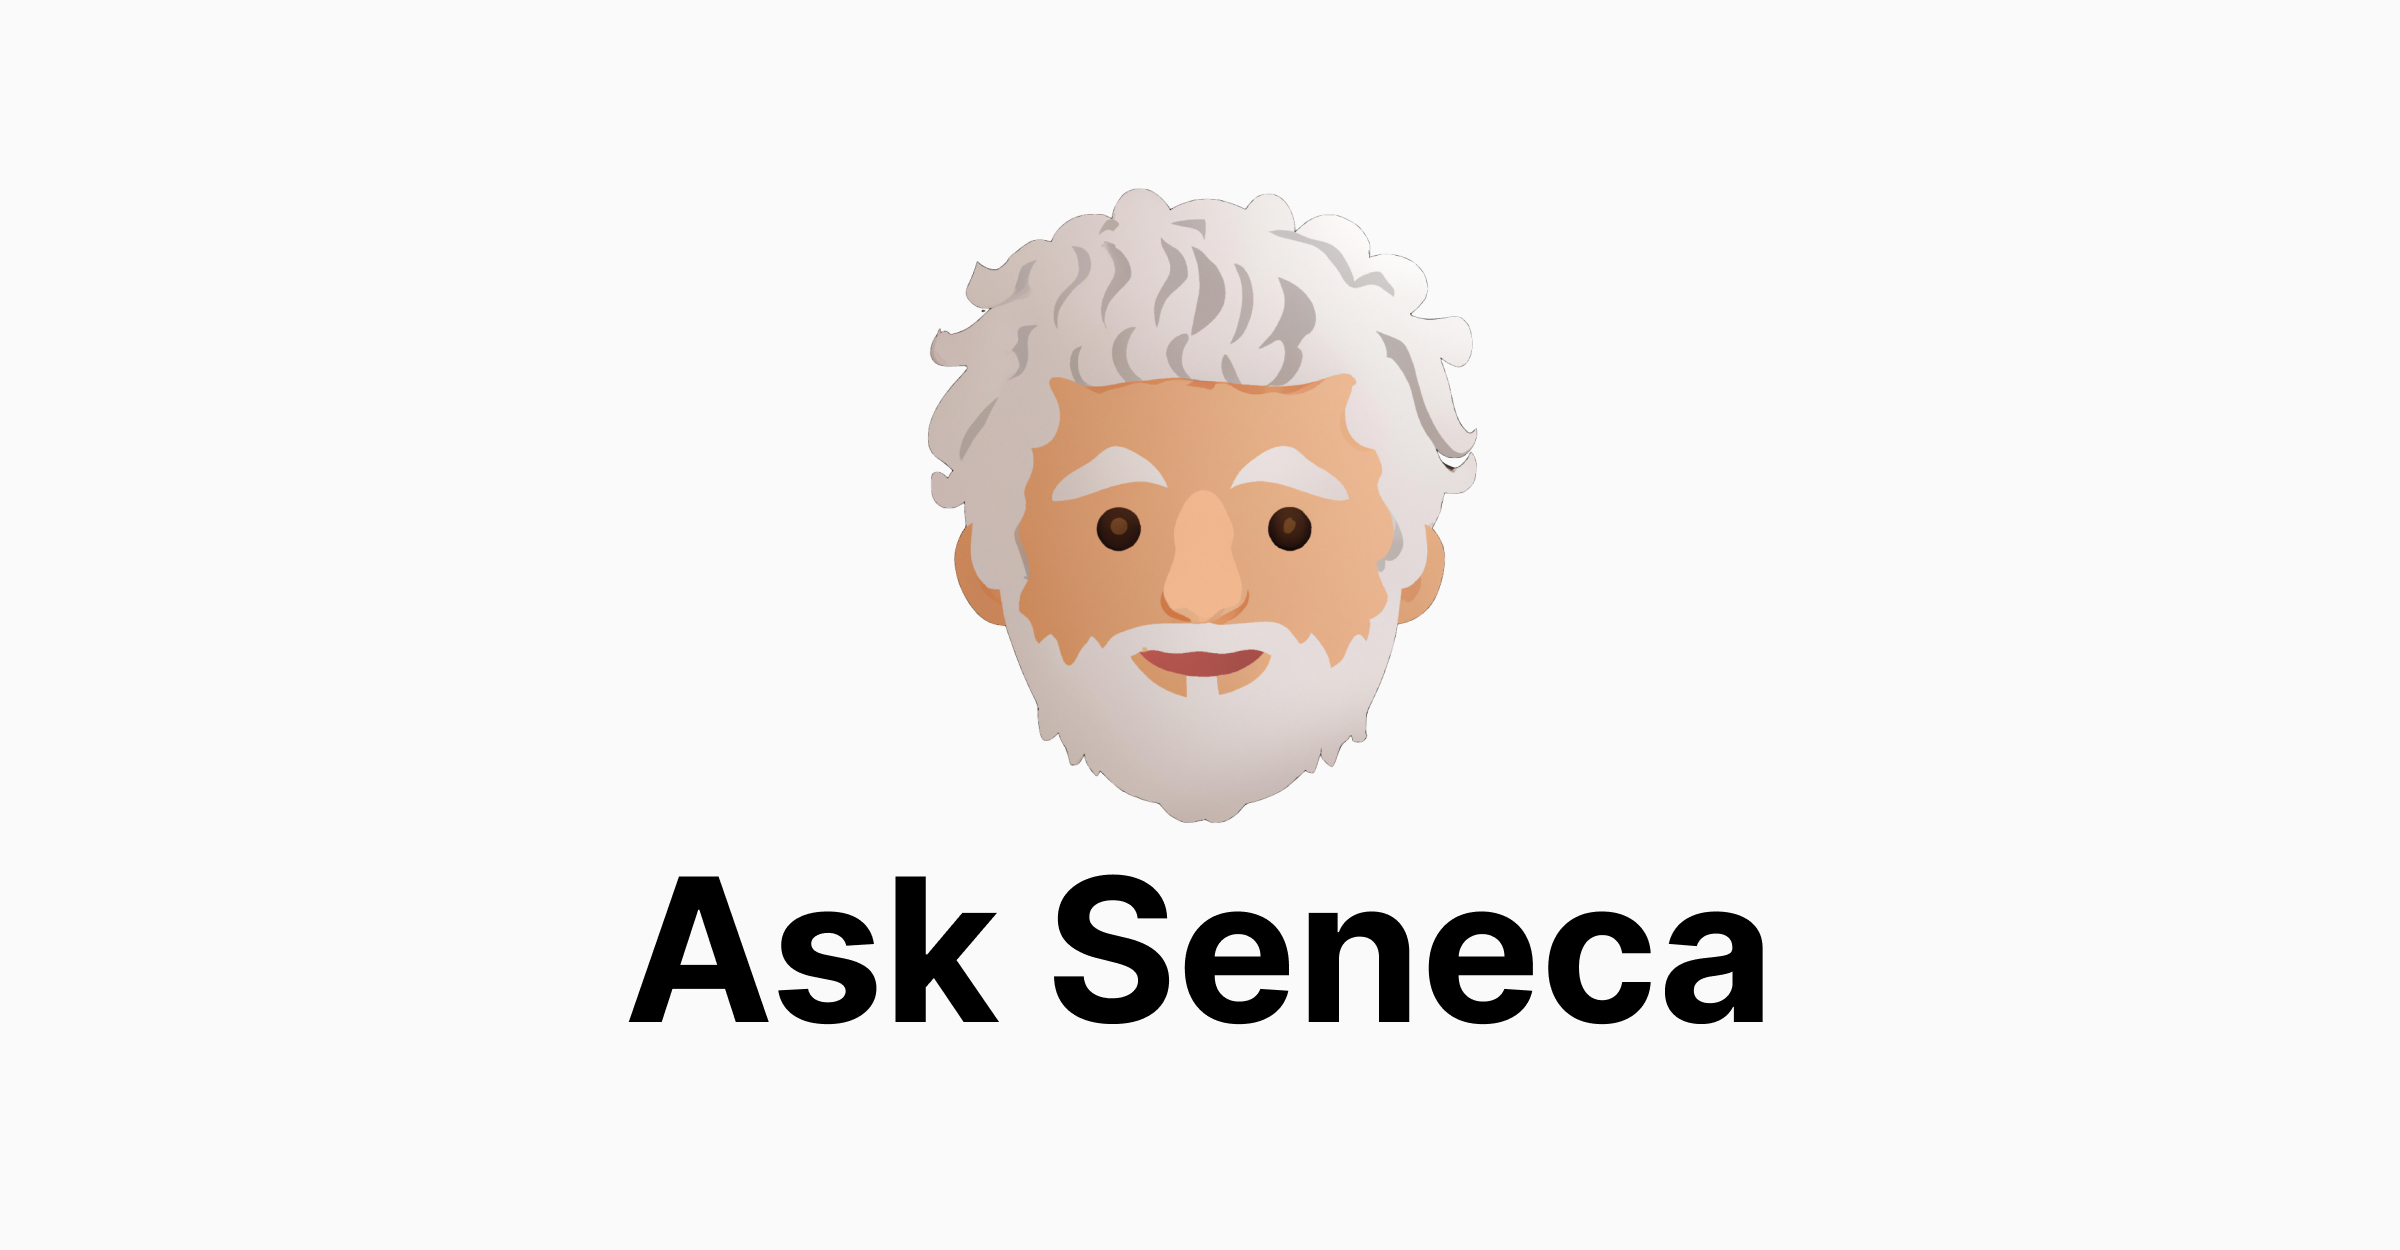 Изображение для сервиса Ask Seneca номер один